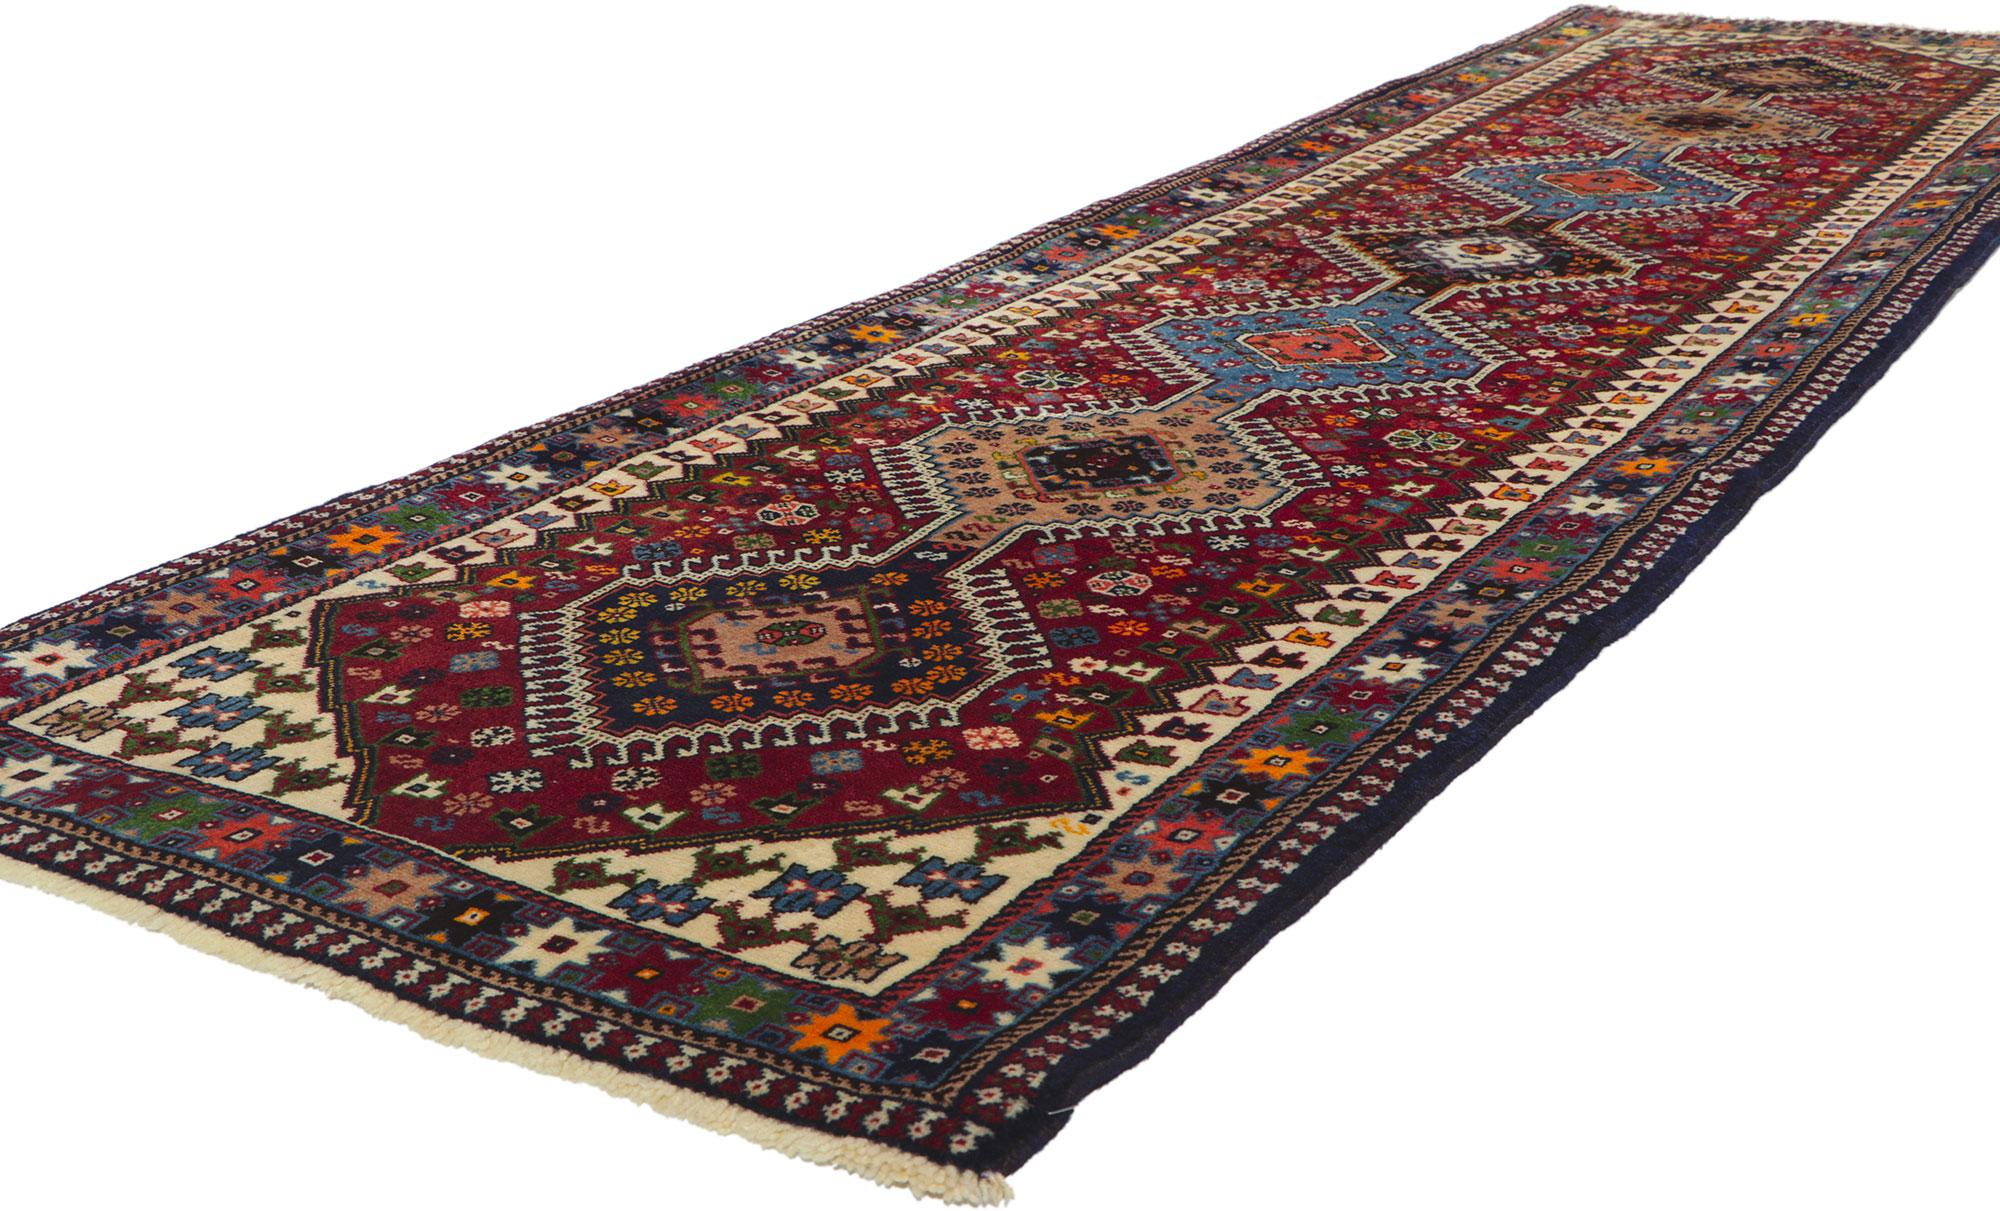 61044 Vintage Persian Shiraz Rug Runner, 02'10 x 10'07. Embarquez pour un voyage évocateur en vous plongeant dans la riche étreinte de ce tapis Shiraz persan vintage en laine nouée à la main. Imaginez l'artisan robuste, tissant habilement un